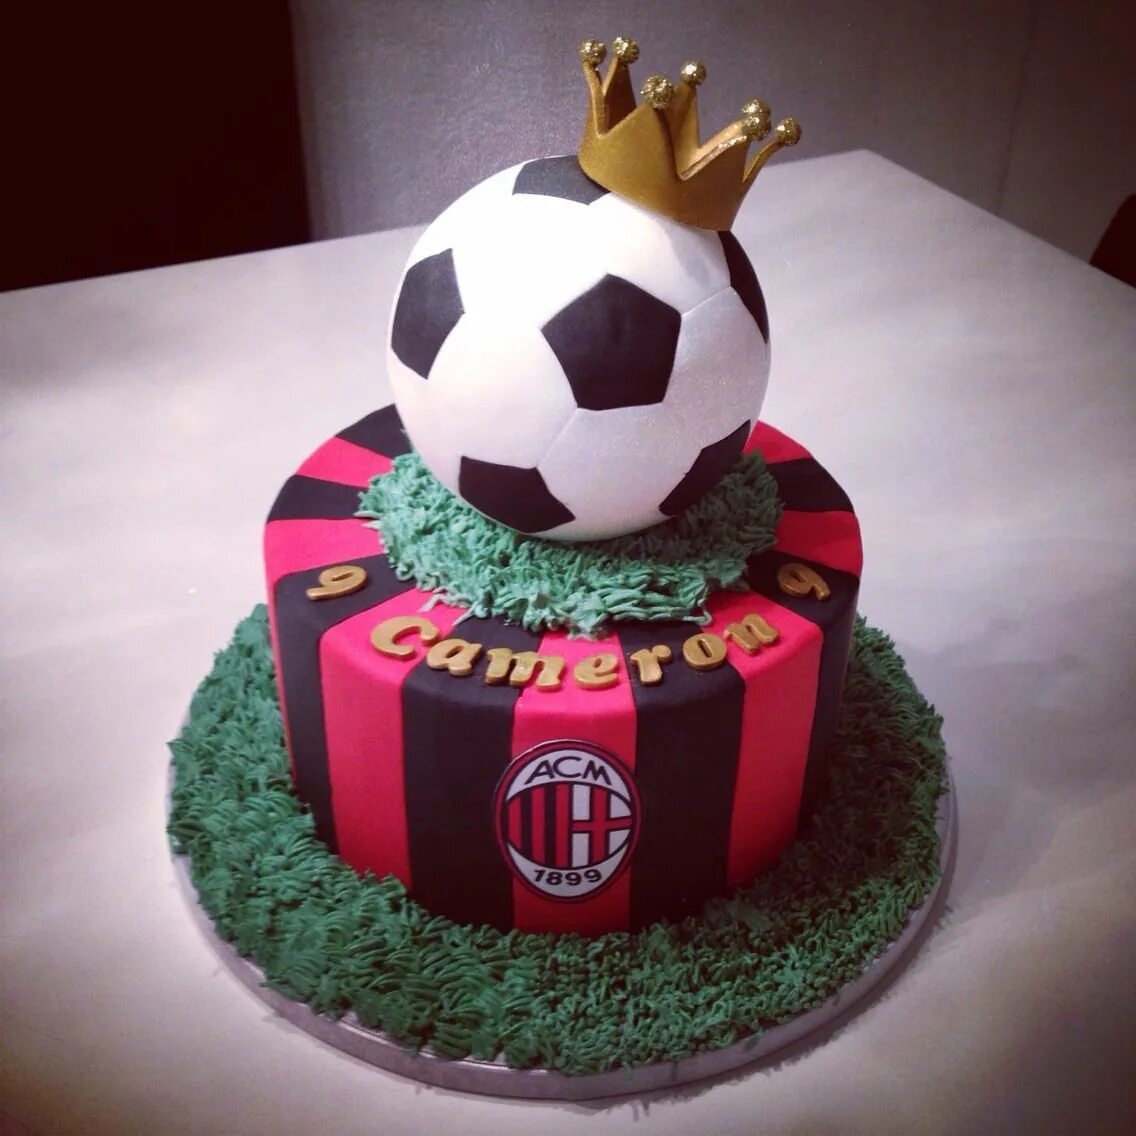 Торт футбольный AC Milan. Торт в стиле футбола. Торт в стиле футбол для мальчика. Торт на день рождения в стиле футбола.